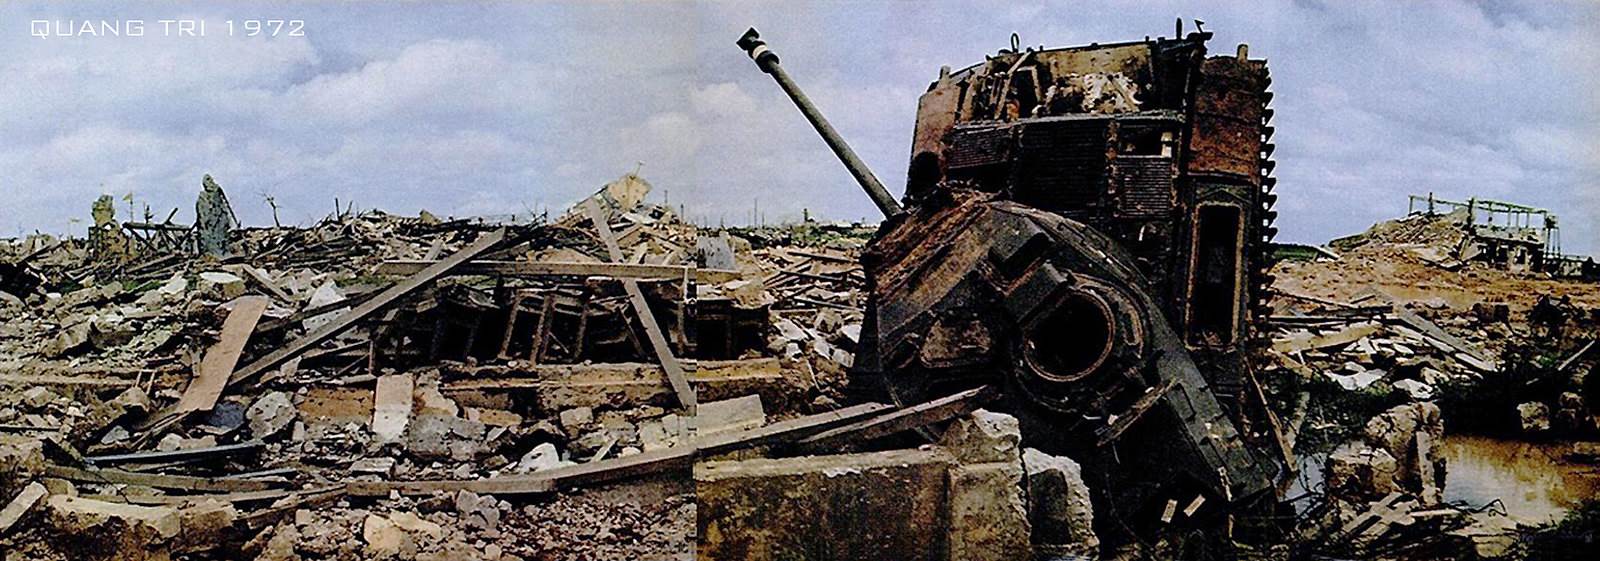 Thành Phố Quảng Trị đổ nát trong trận chiến 1972